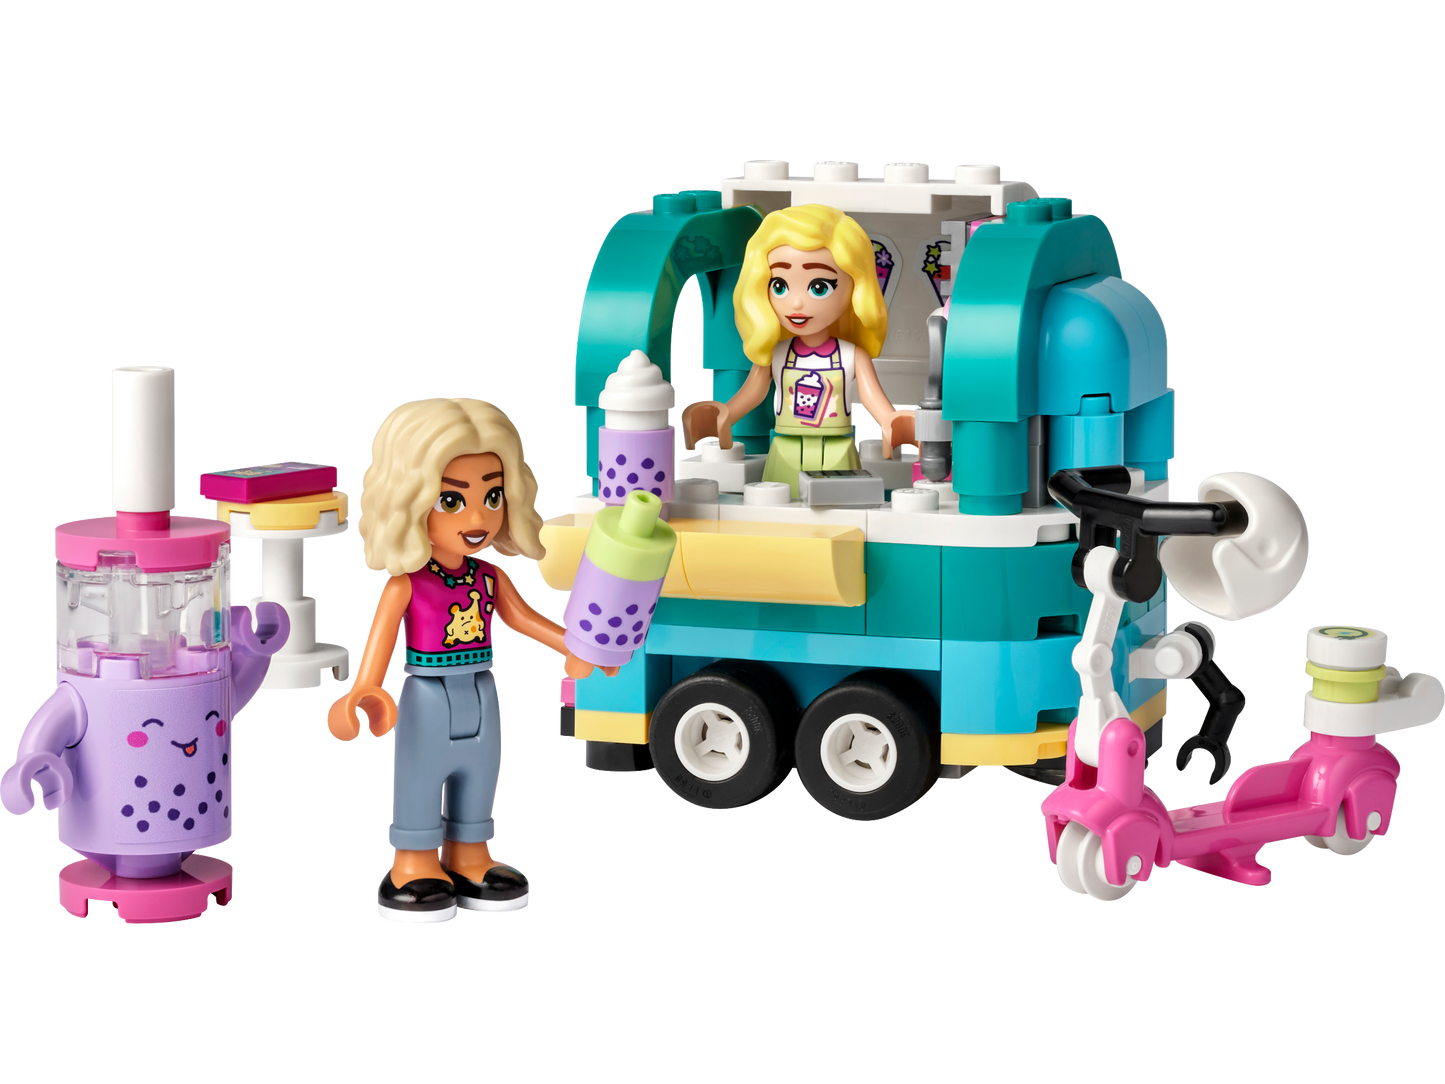 LEGO® Friends 41733 Bubble-Tea-Mobil